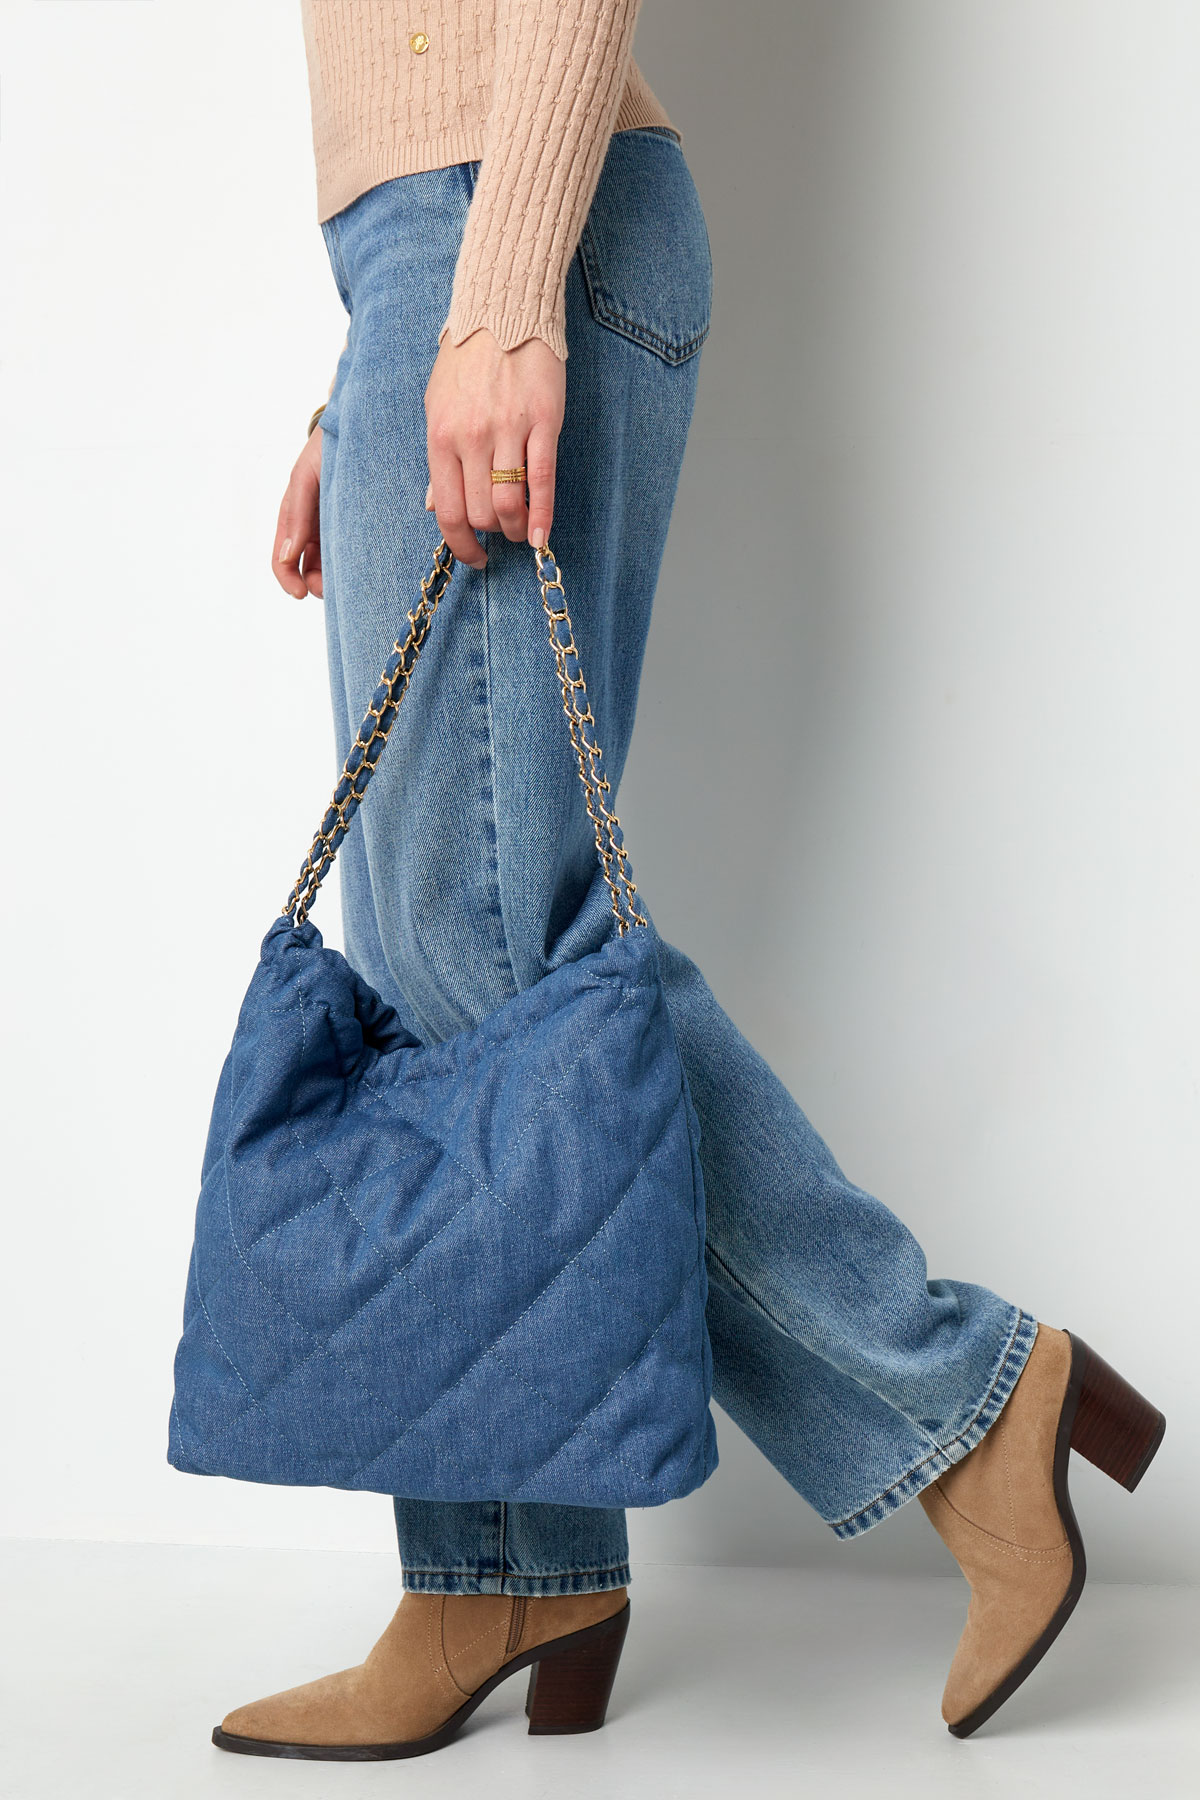 Jeanstasche mit Stickmotiv und Kette – Hellblau h5 Bild6